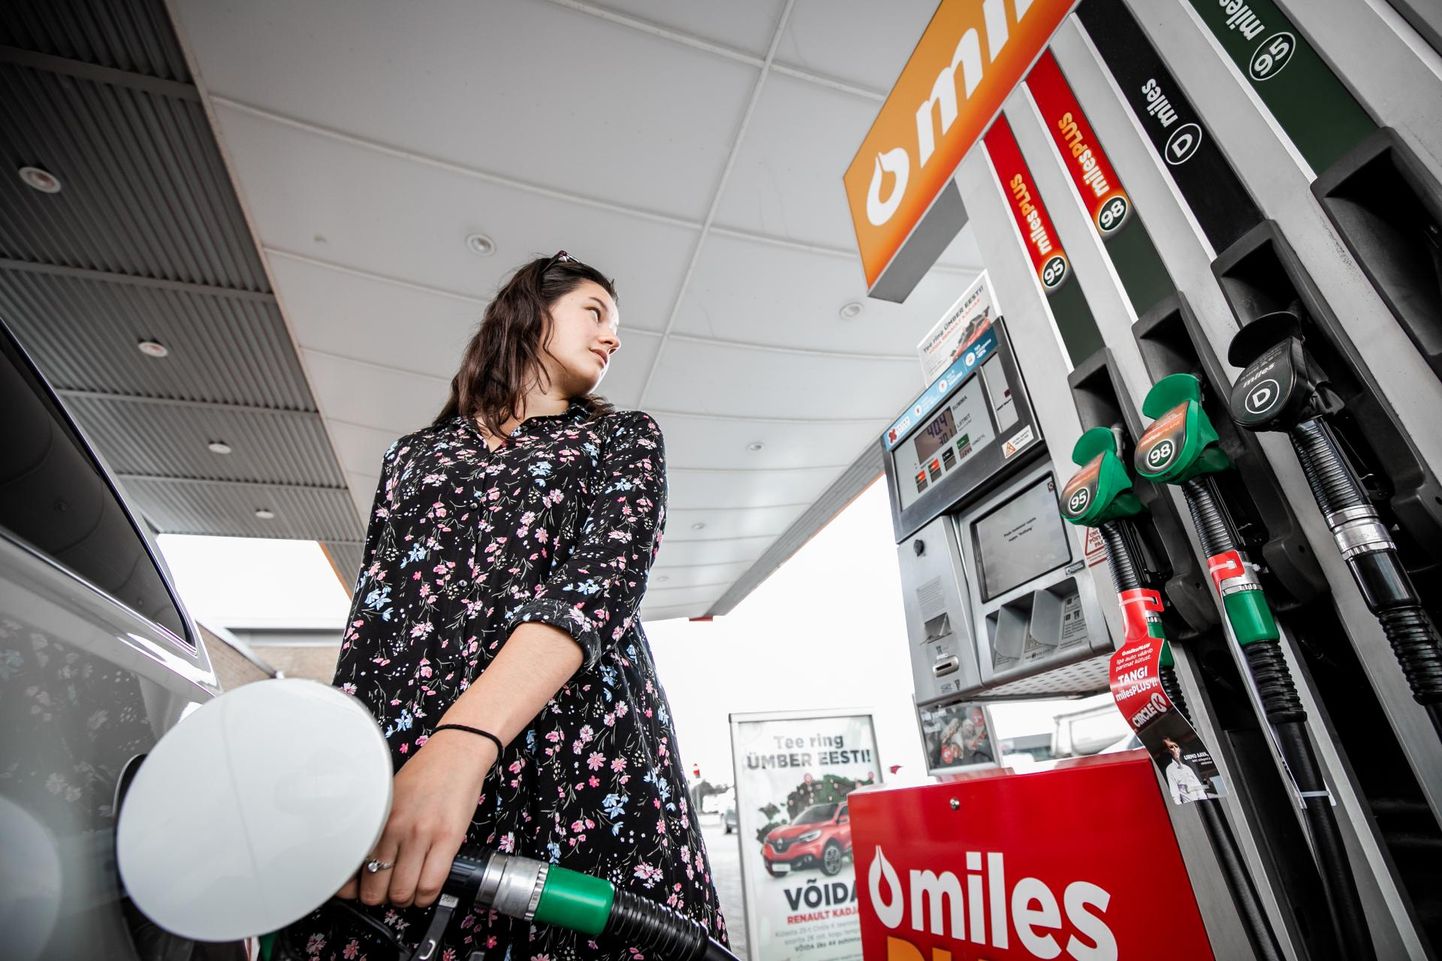 Tõusvad kütusehinnad panevad mõtlema, kuidas ja millega võimalikult säästlikult sõita.